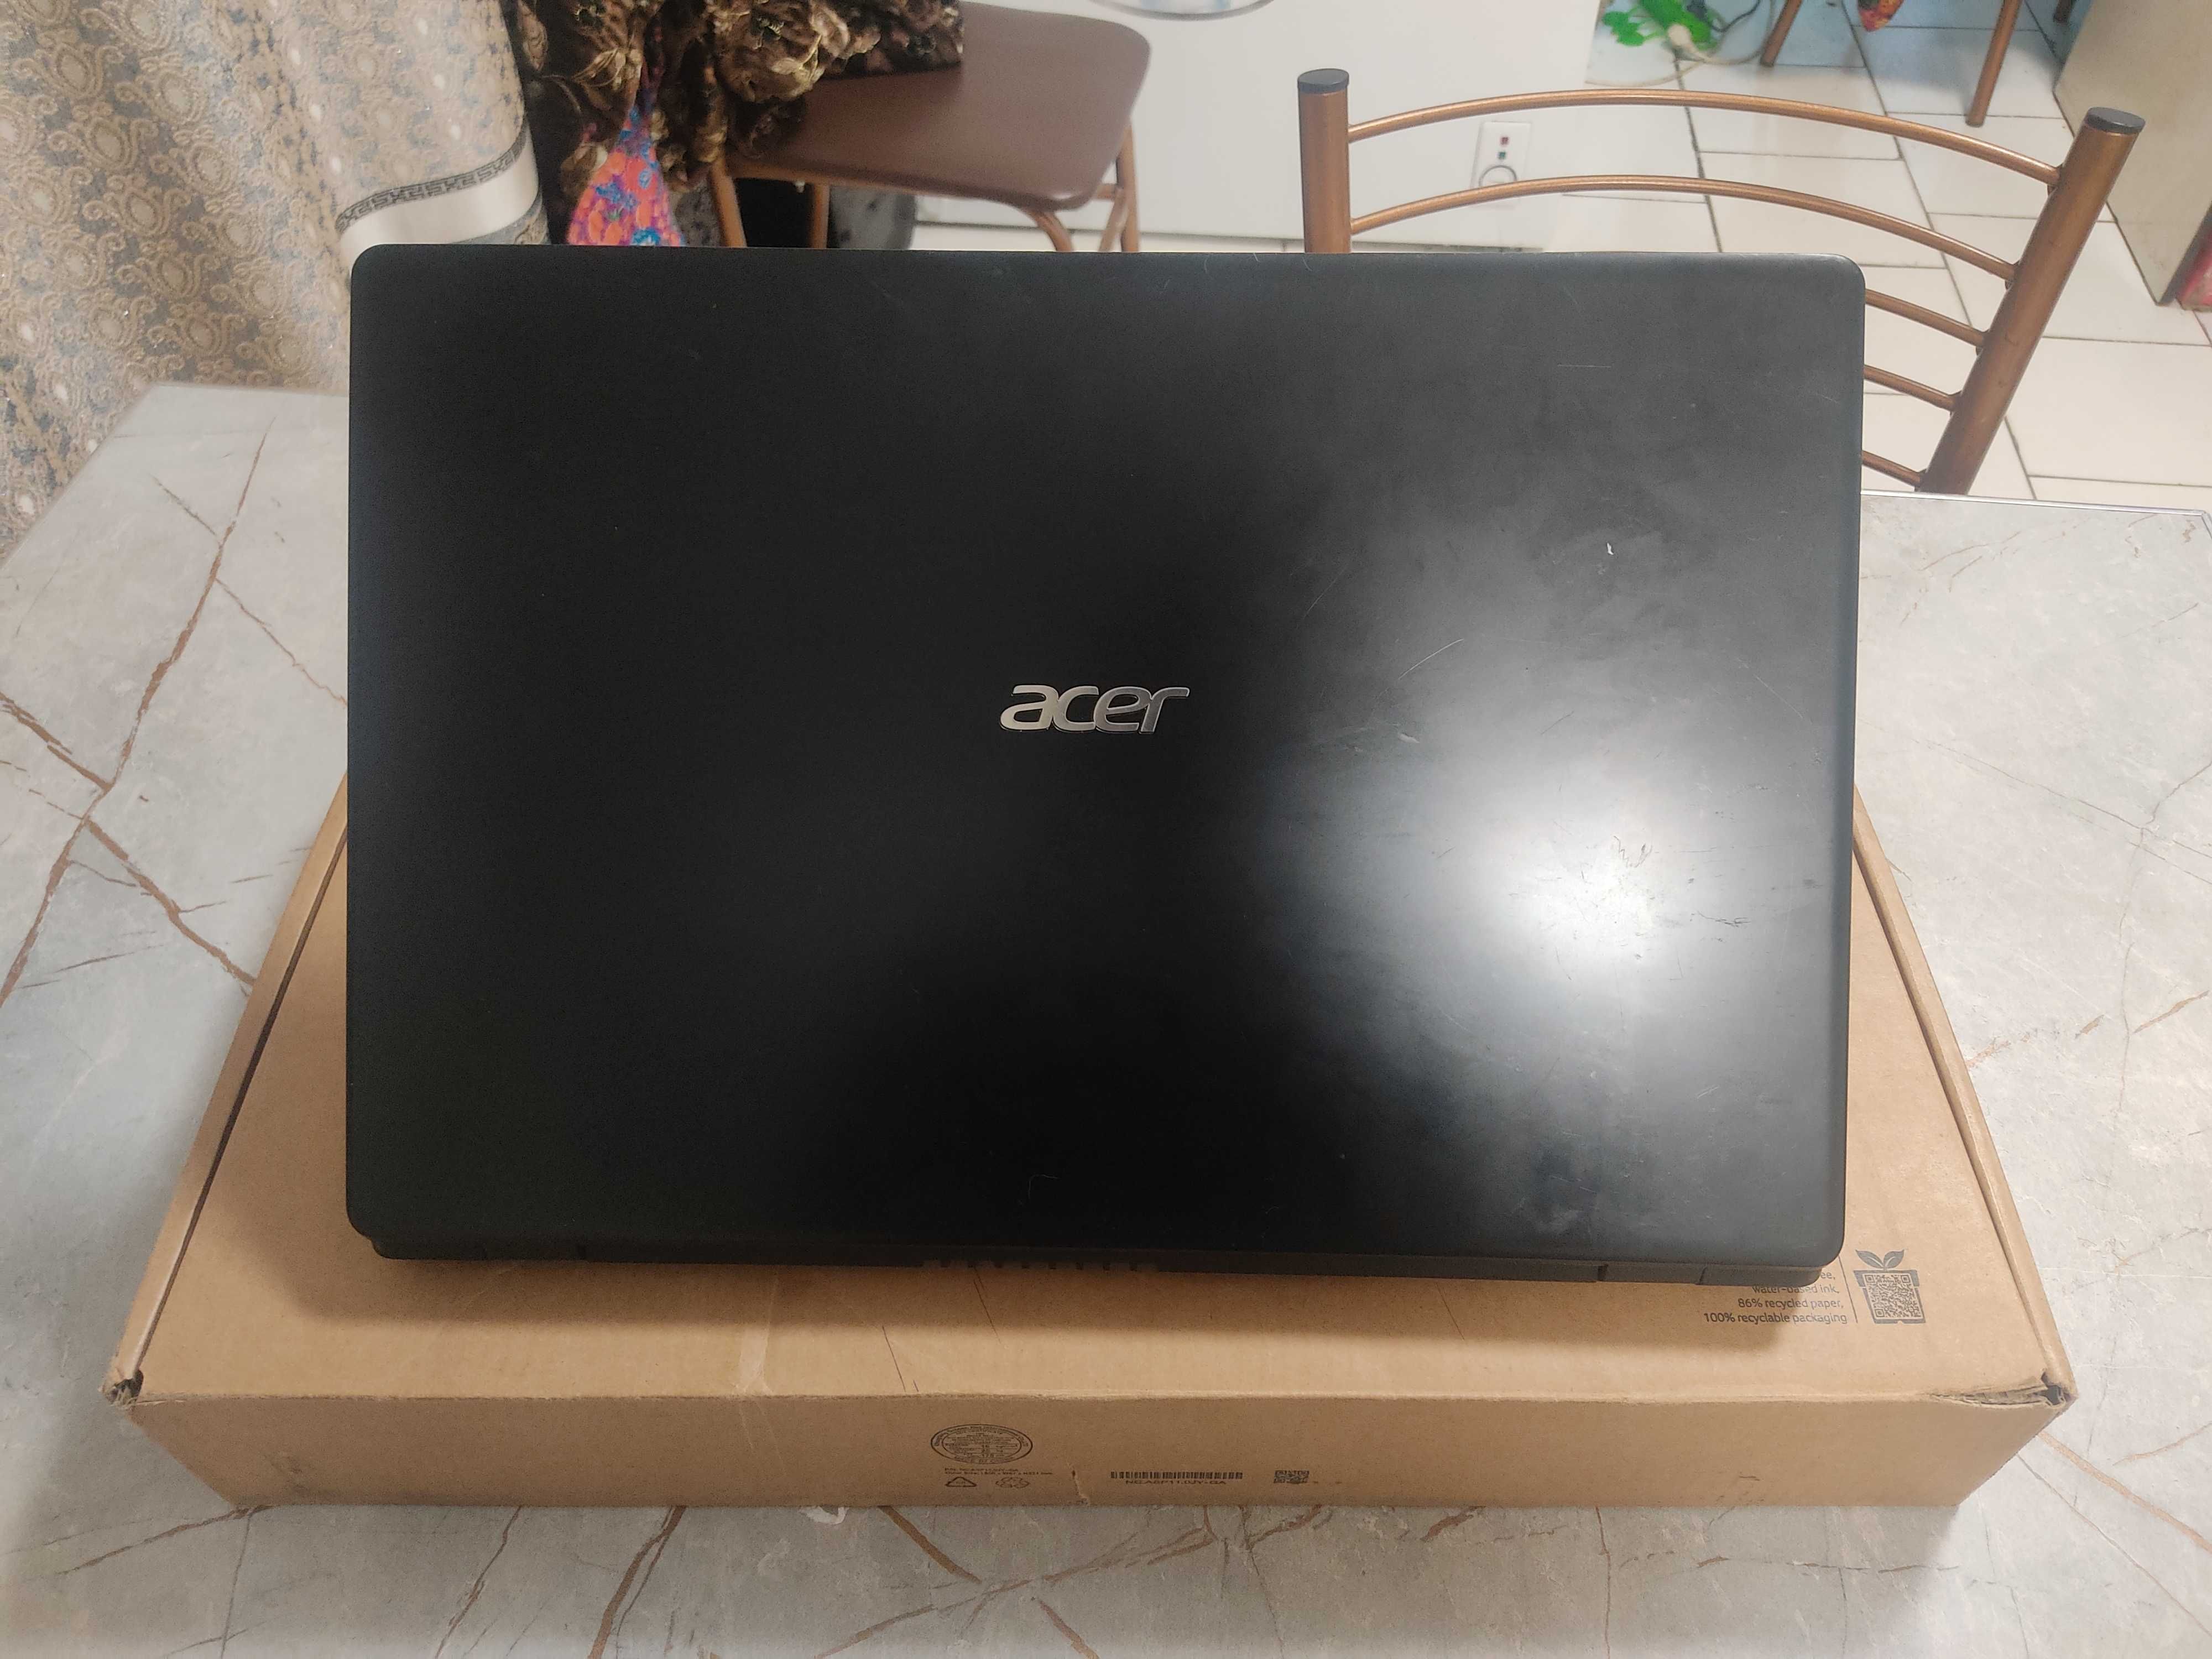 Acer noutbook i3